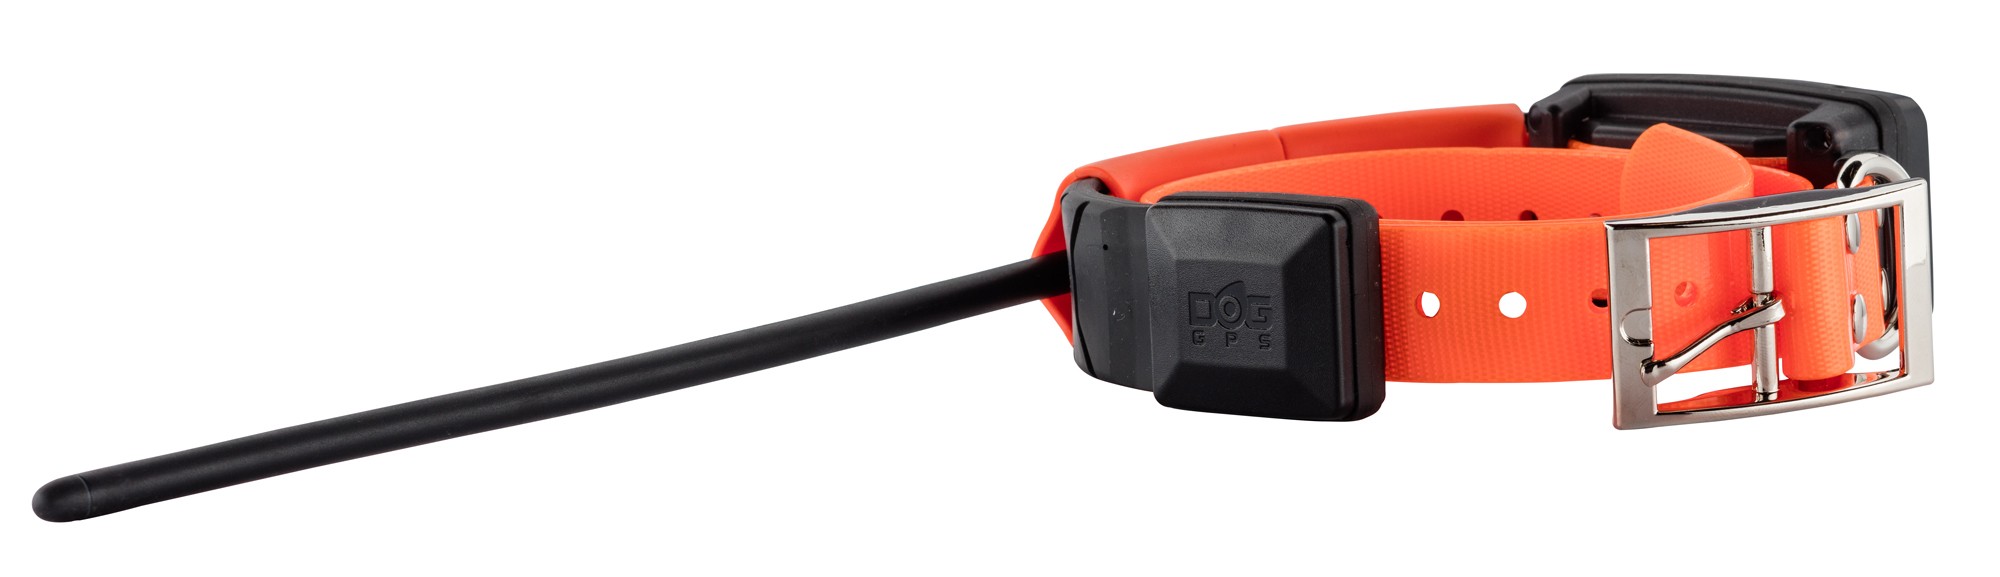 CH963103-8 Collier GPS et de dressage pour chiens DogTrace X30T  orange fluo